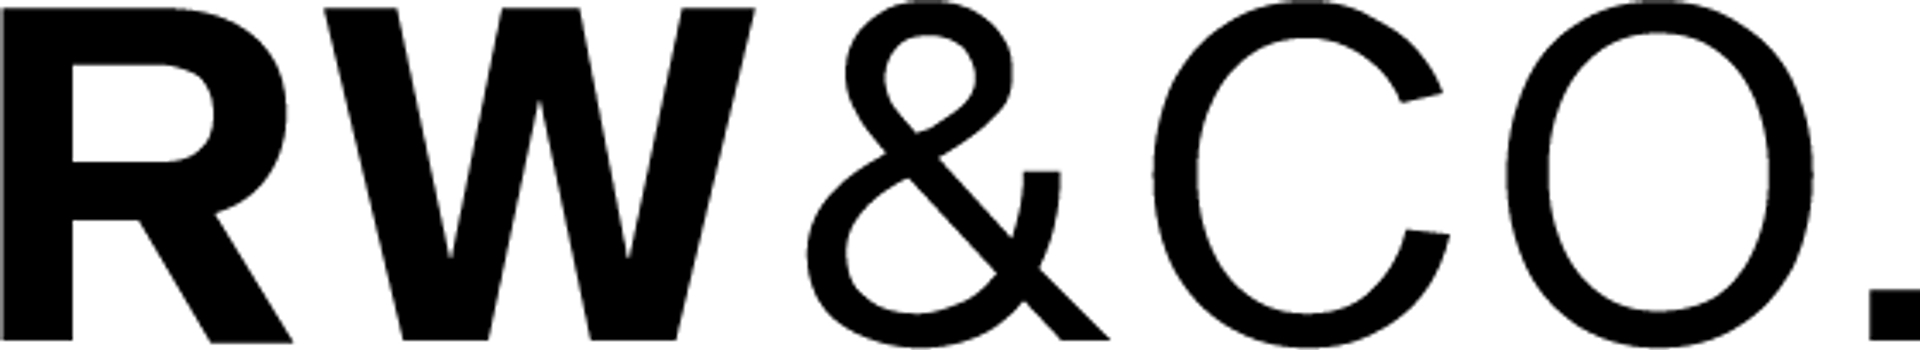 RW&CO logo de circulaires